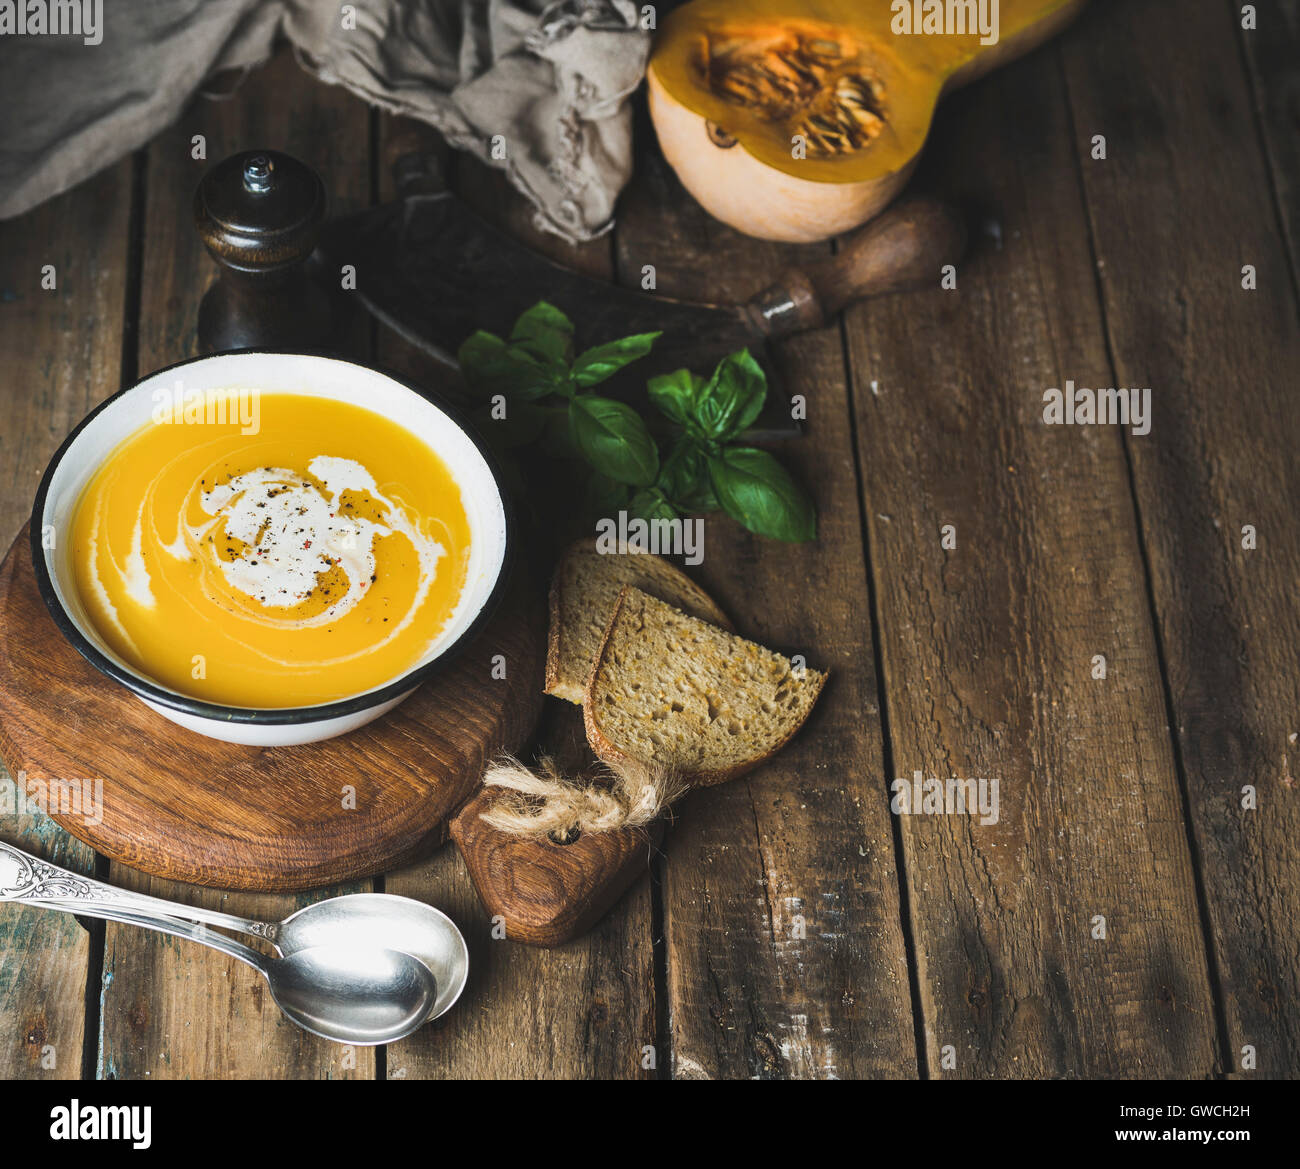 Crema di zucca zuppa nel recipiente con le foglie di basilico, spezie e grigliate le fette di pane serviti con zucca freschi sopra il vecchio in legno rustico b Foto Stock